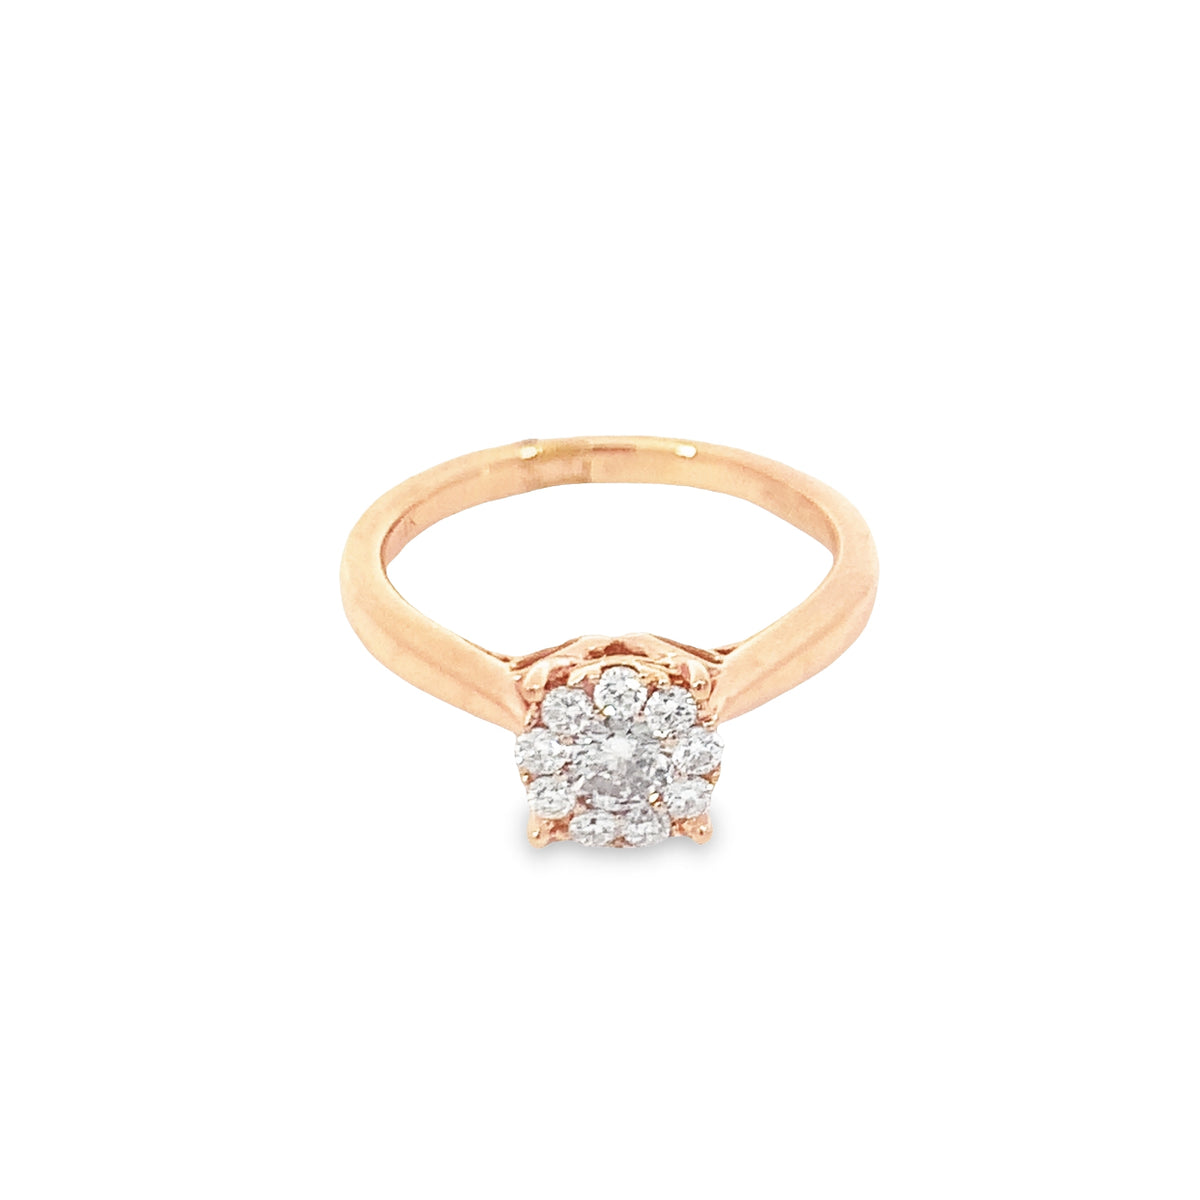 ENGAGEMENT RING 14KT DIAMOND ROSE GOLD GBJ-035222